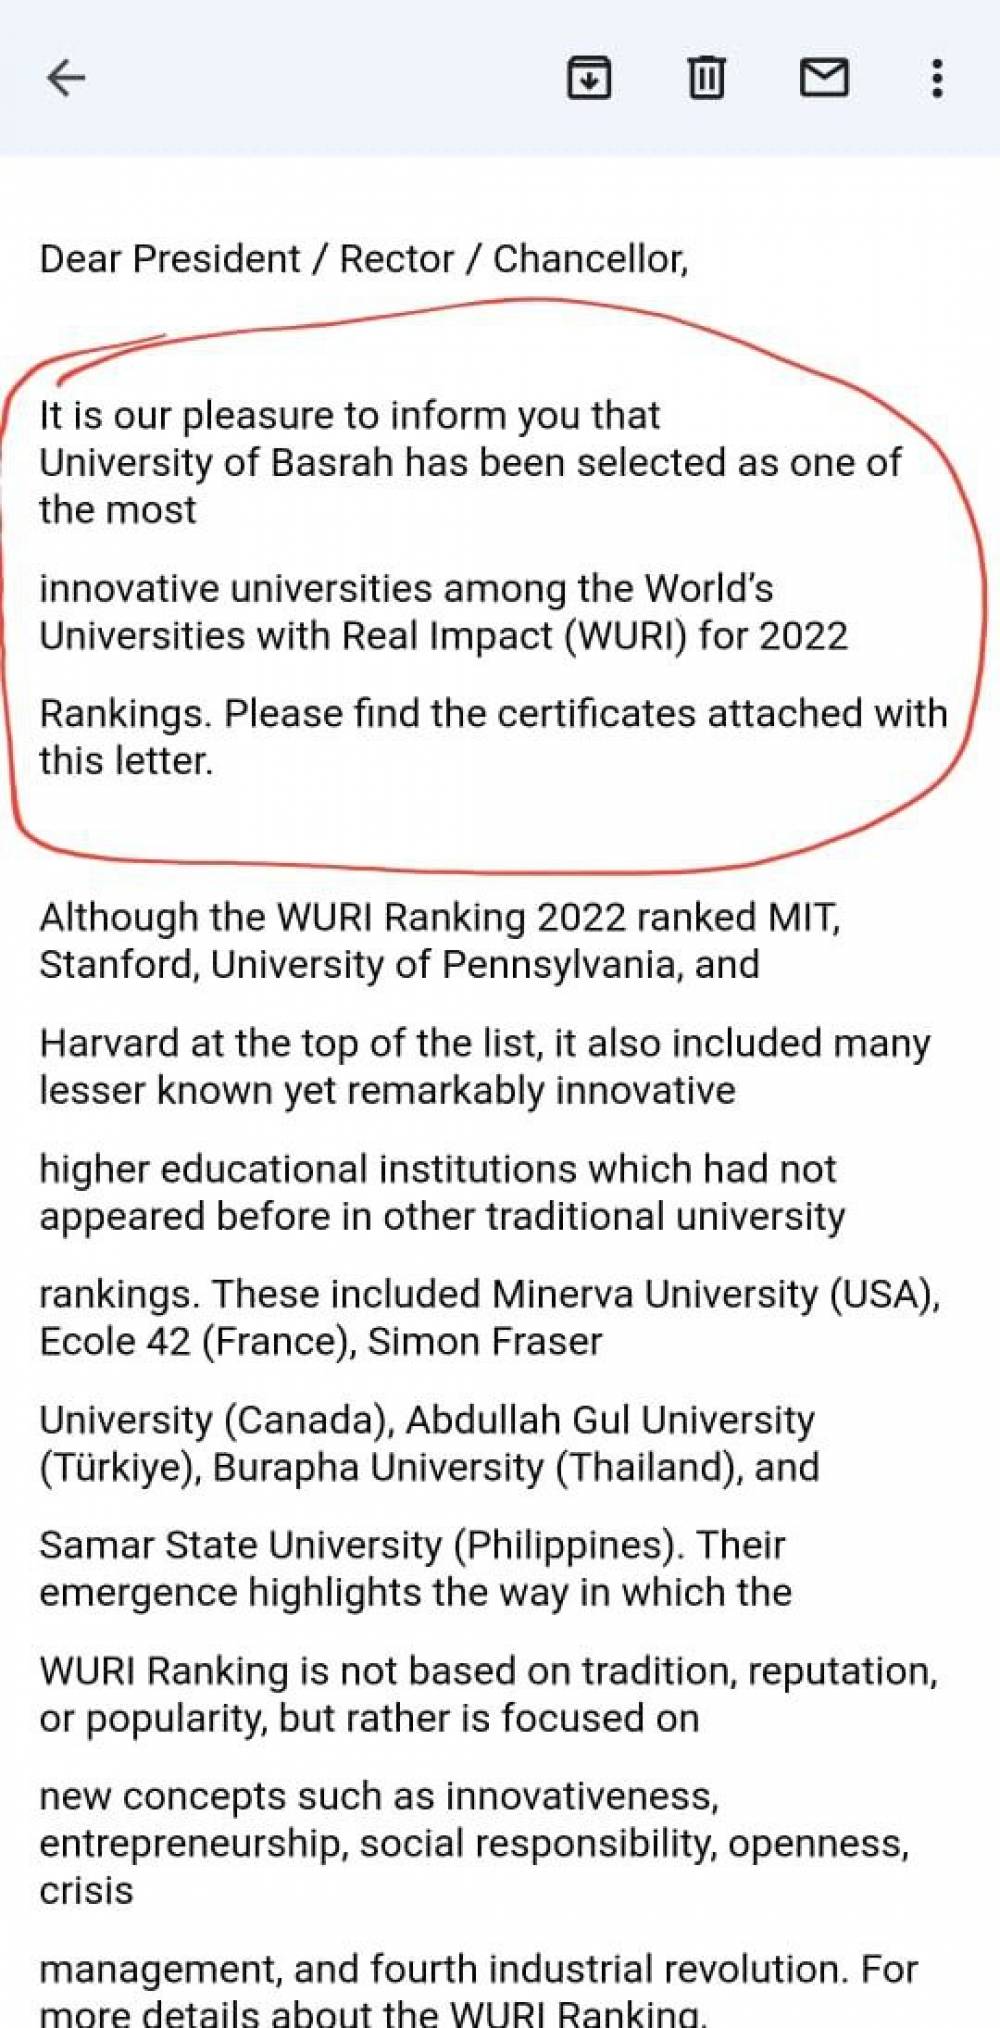 اختيار جامعة البصرة واحدة من افضل جامعات العالم في الابداع بتصنيف (WURI)